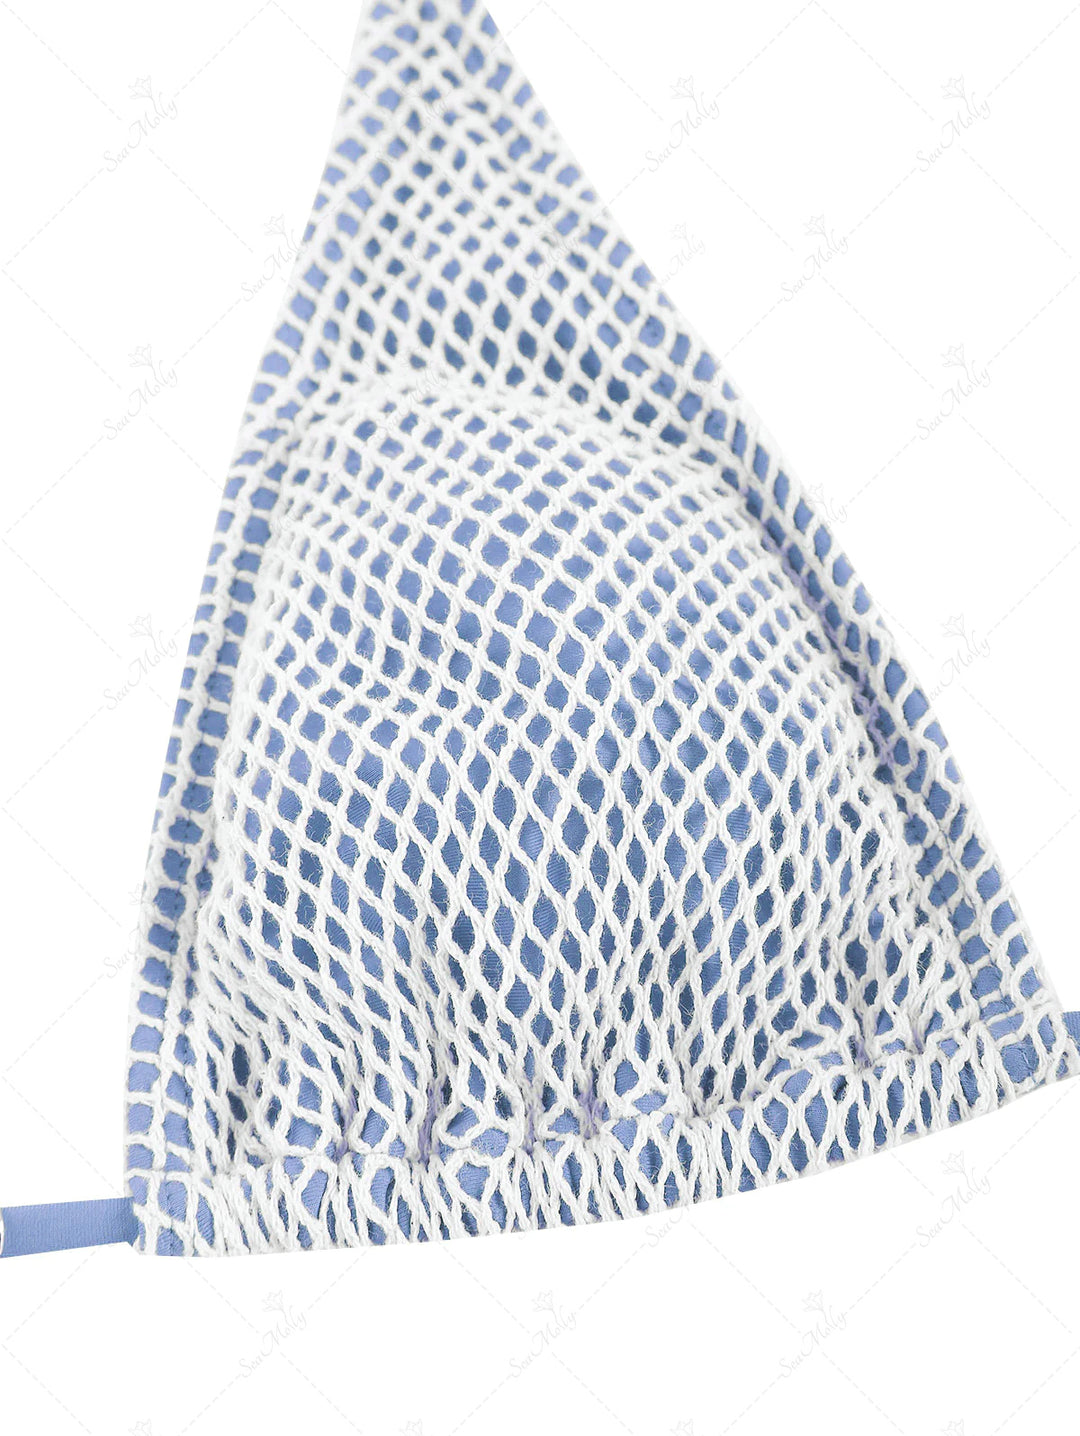 Seamolly Matching Multiway Crochet Fishnet Tie Shell Decorated Tanga Bikini Set